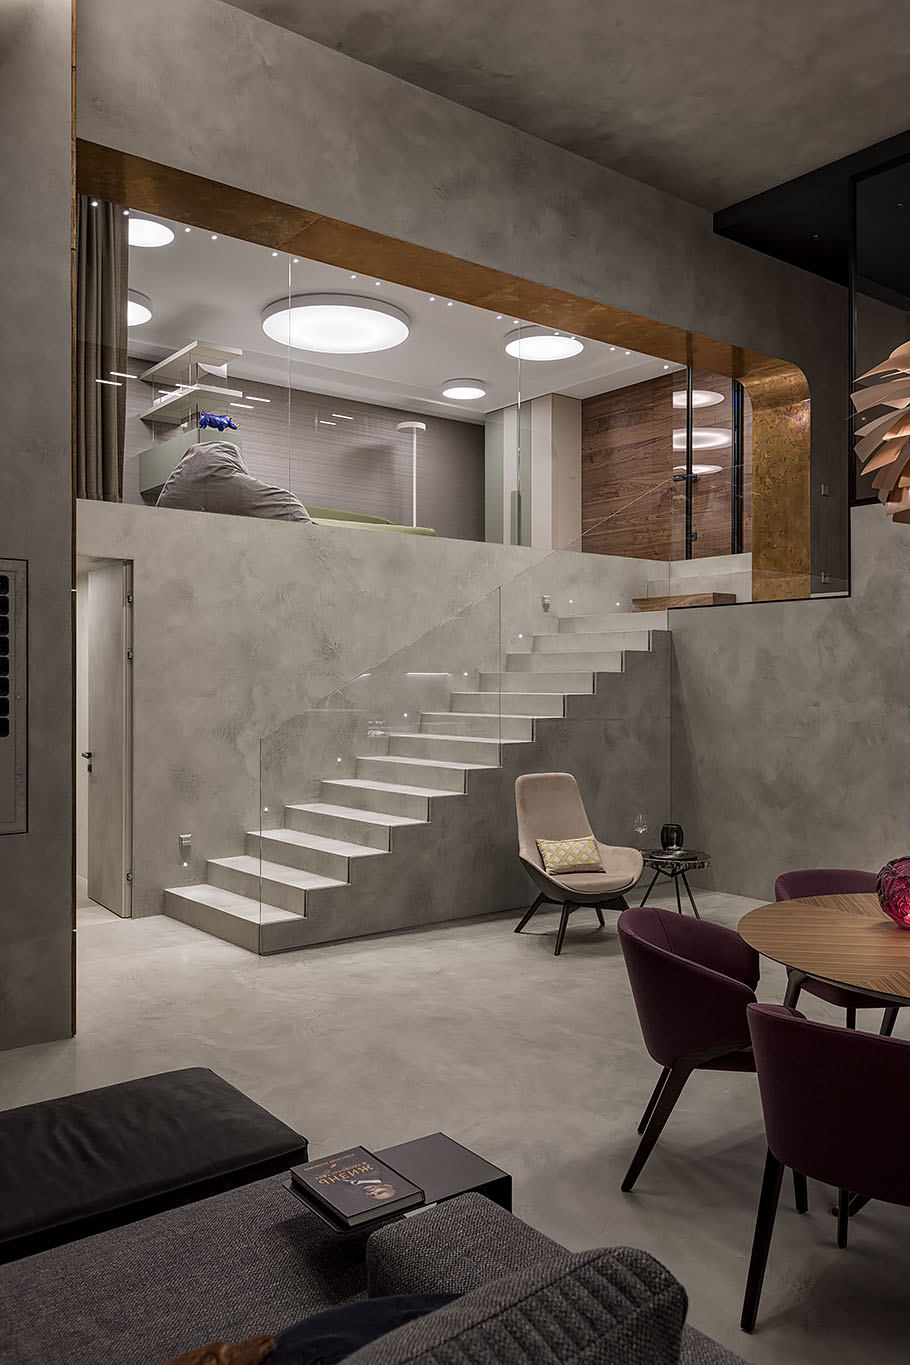 Luxusný apartmán s mikrocementom na stenách, schodiskách a podlahe.